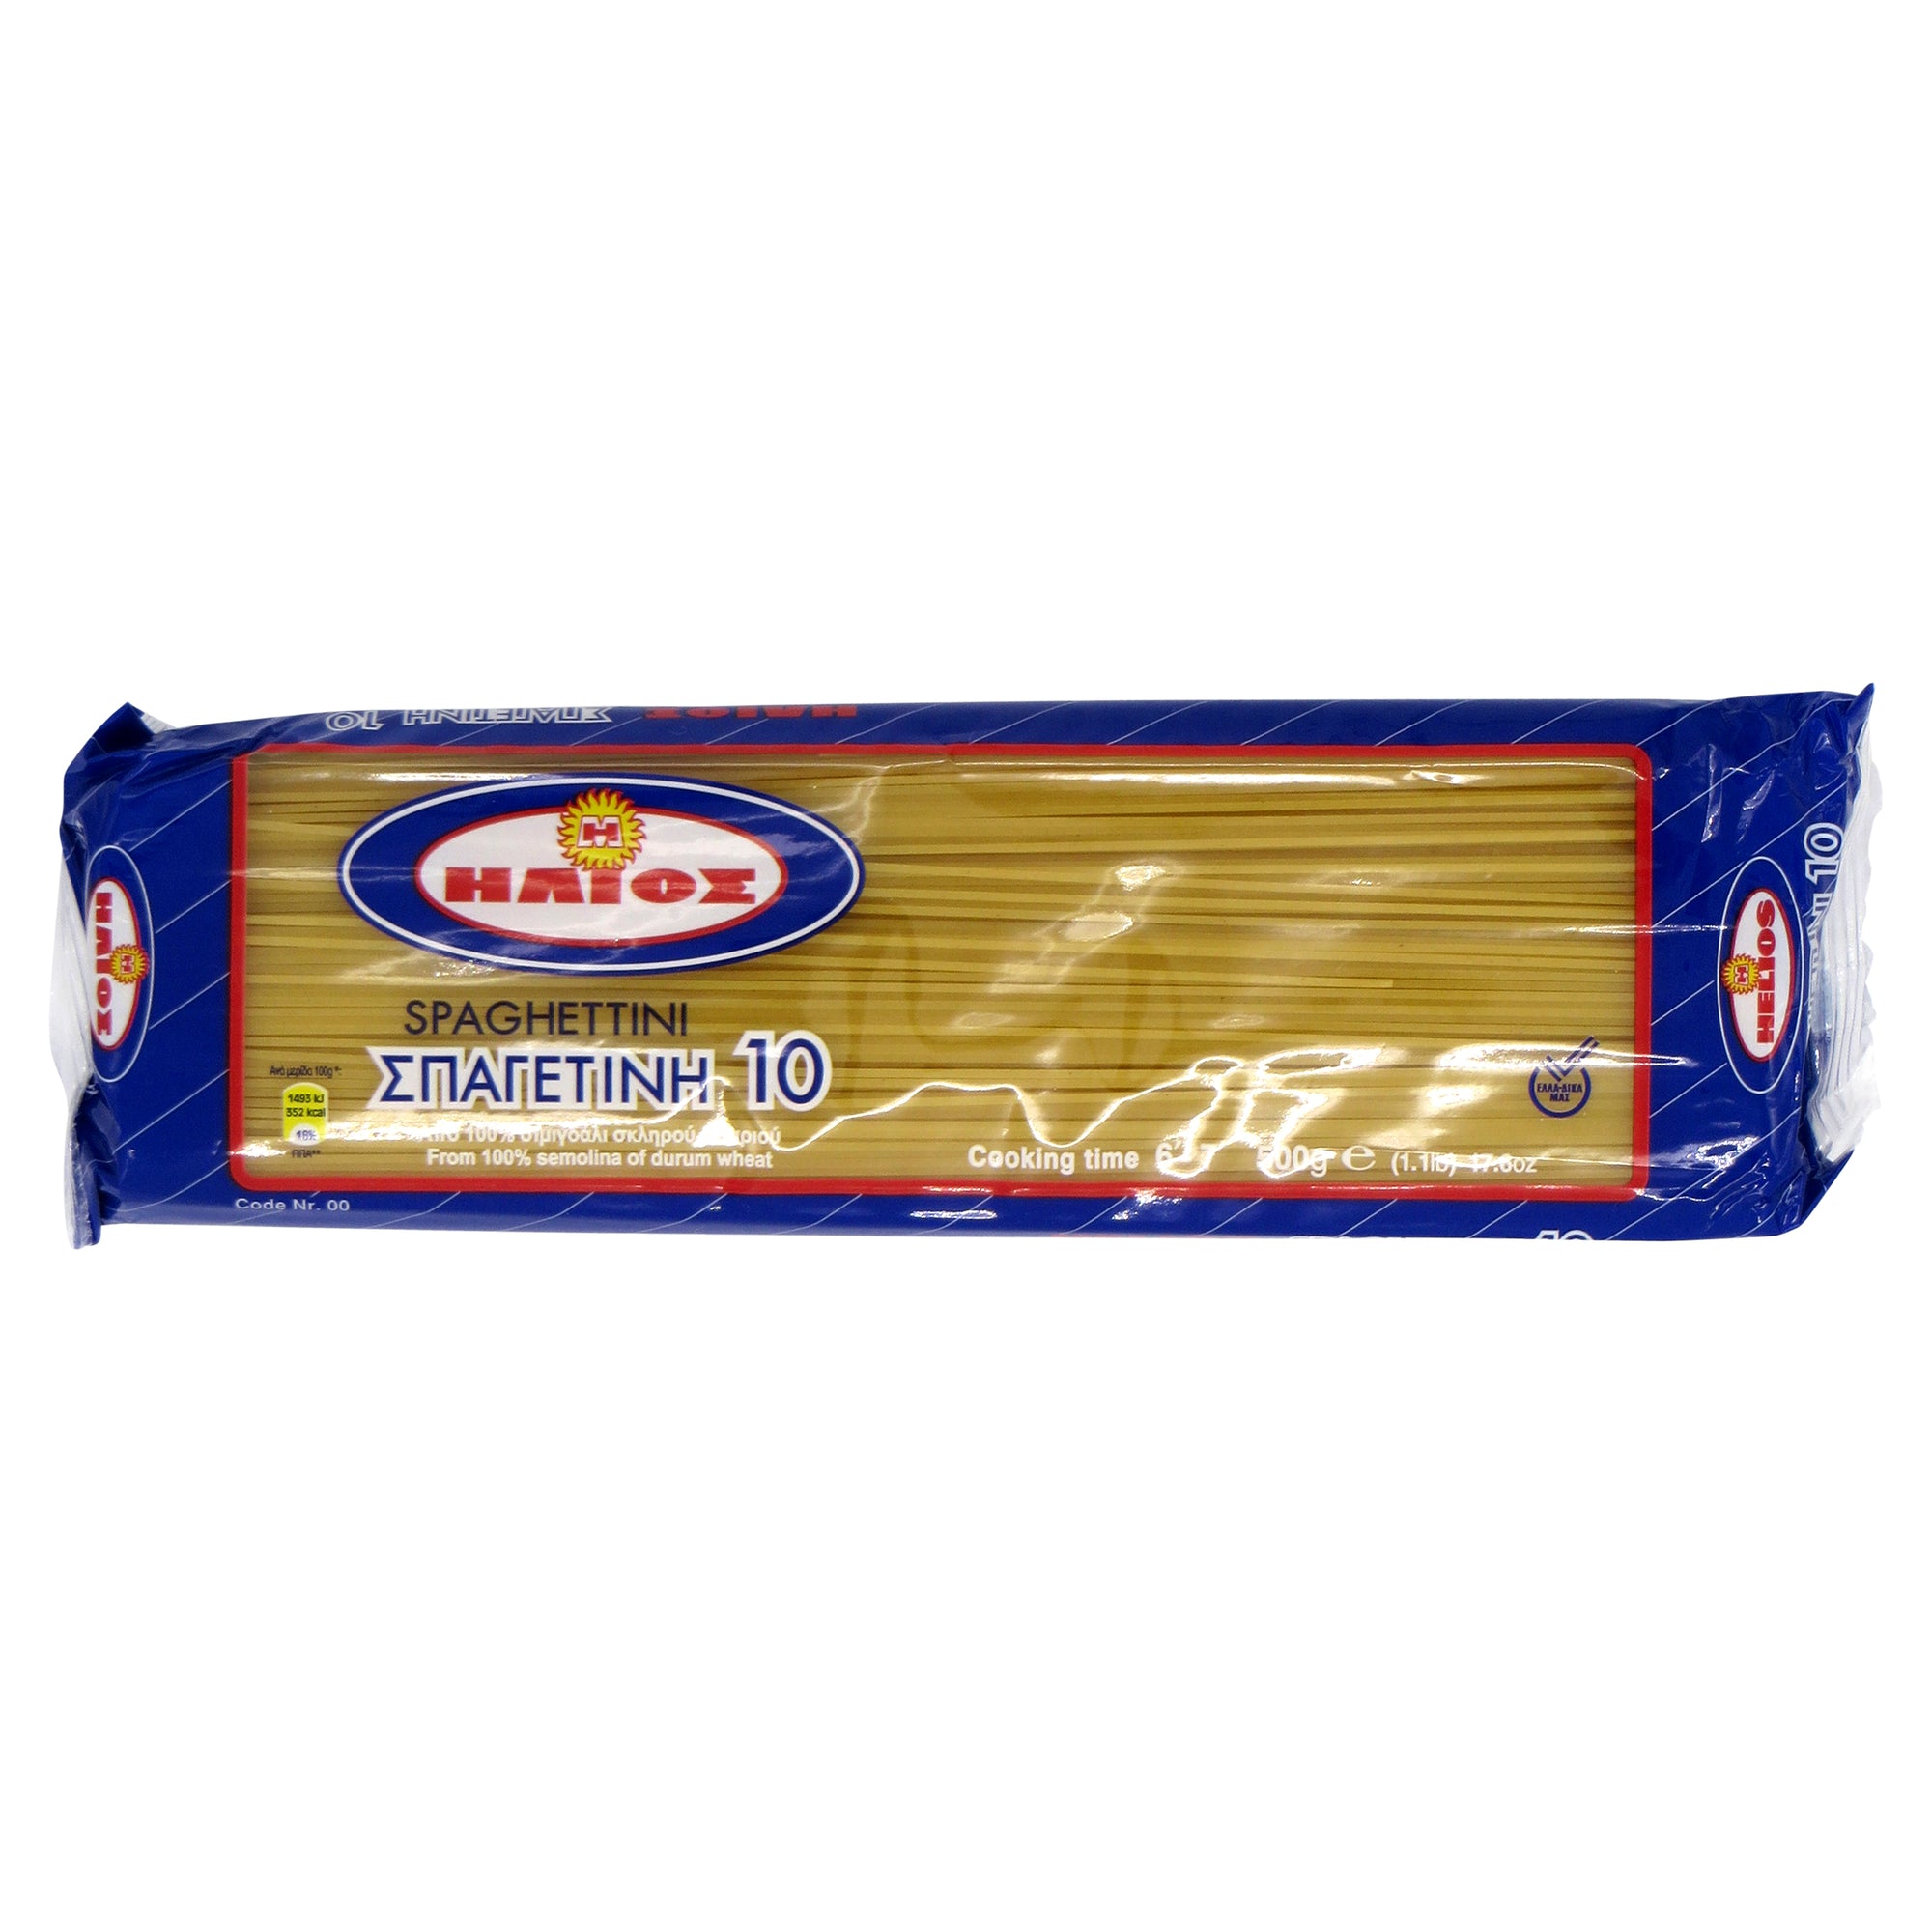 'Helios' Spaghettini #10 500g